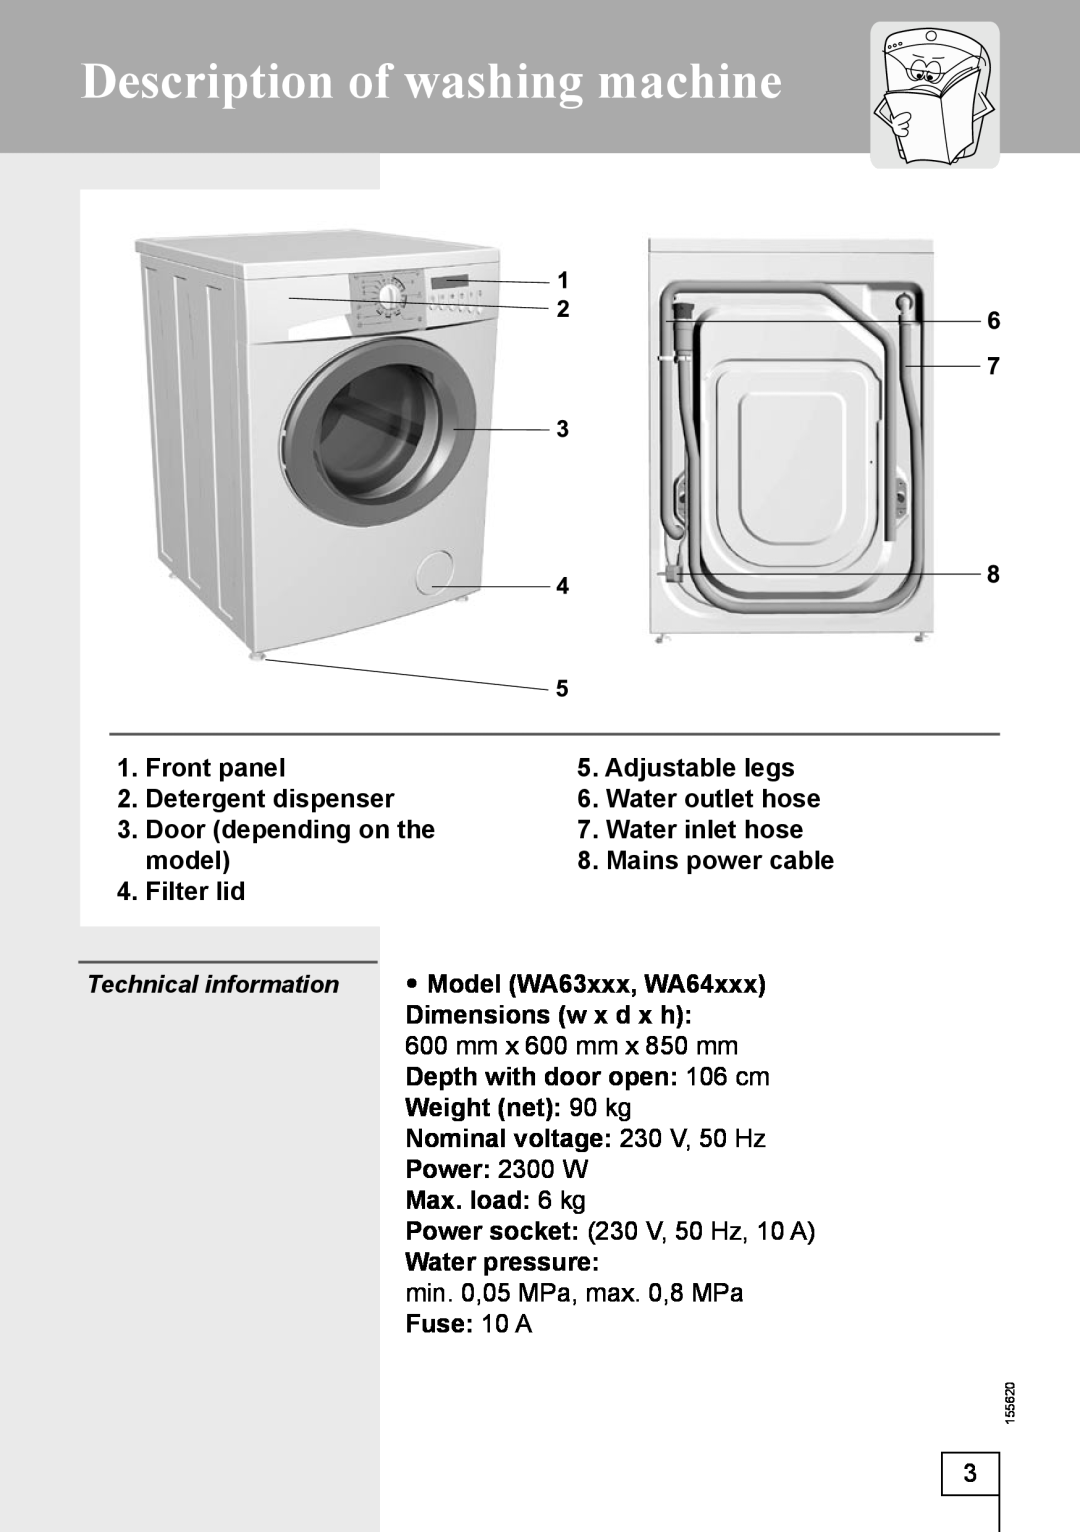 Smeg 155620 Description of washing machine, Front panel, Adjustable legs, Detergent dispenser, Water outlet hose, model 